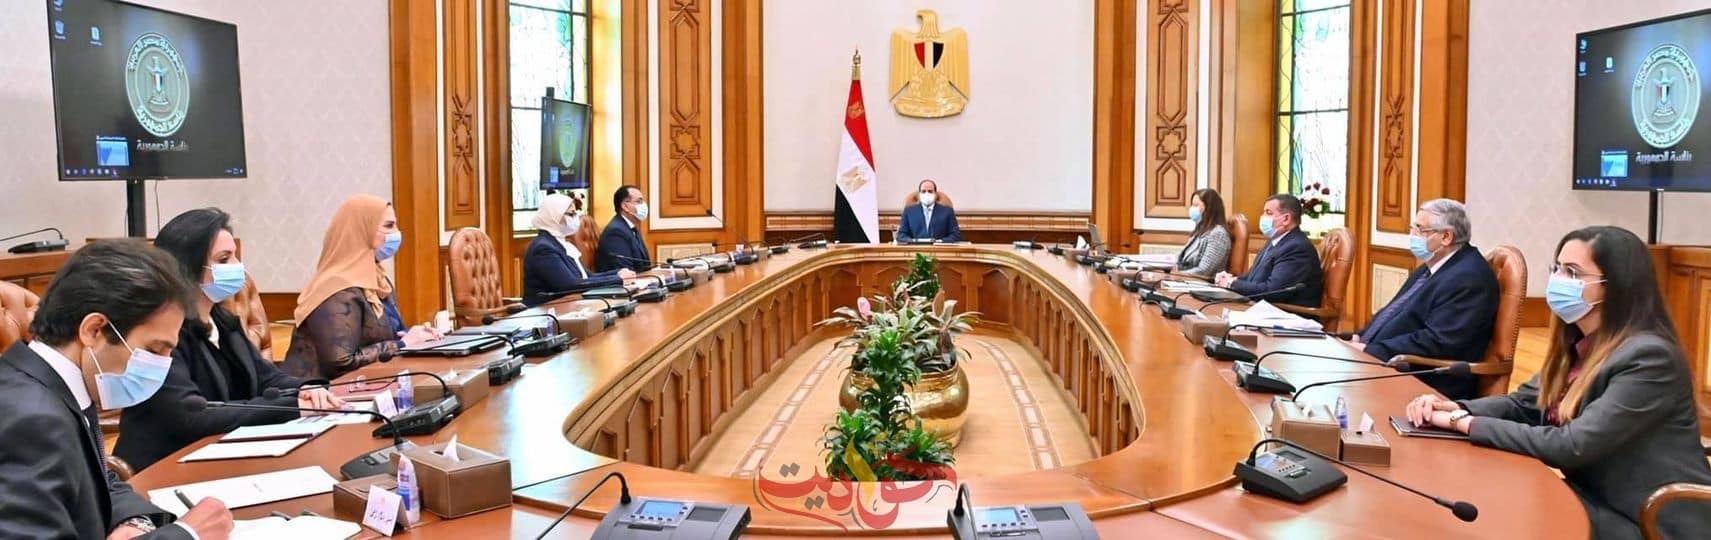 الرئيس السيسى يطلع على مخطط "المشروع القومي لتنمية الأسرة المصرية"